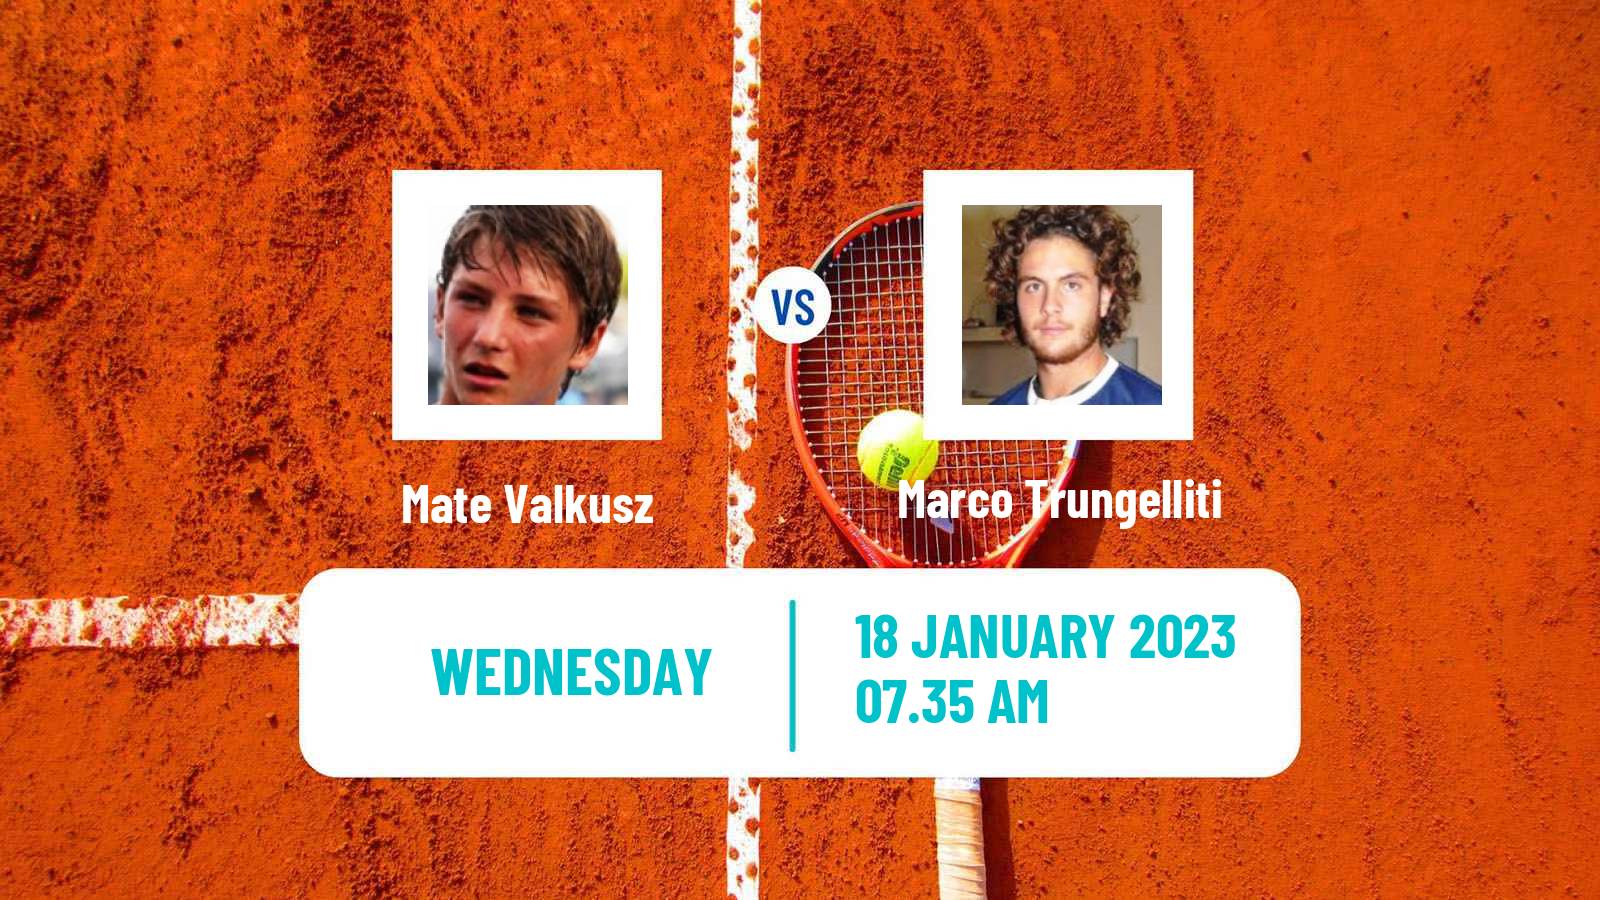 Tennis ATP Challenger Mate Valkusz - Marco Trungelliti